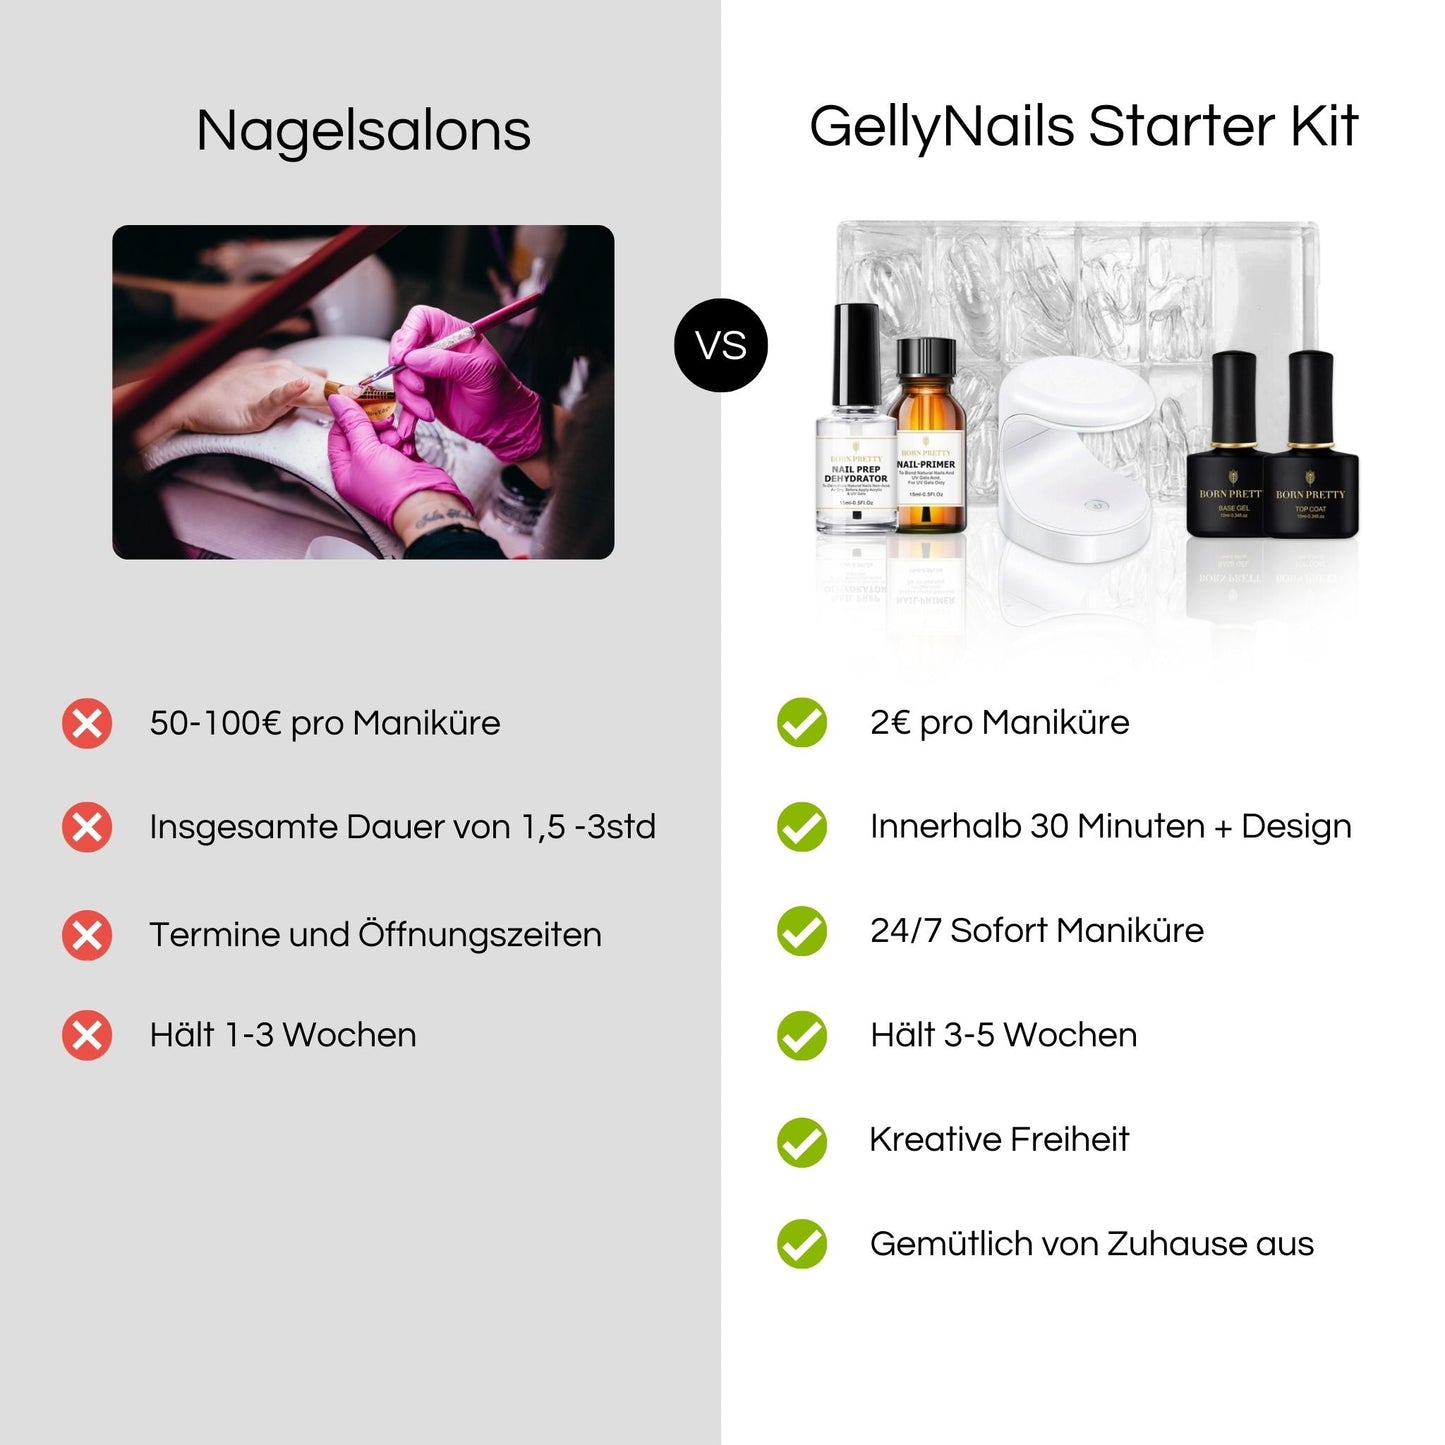 GellyNails Starter Kit